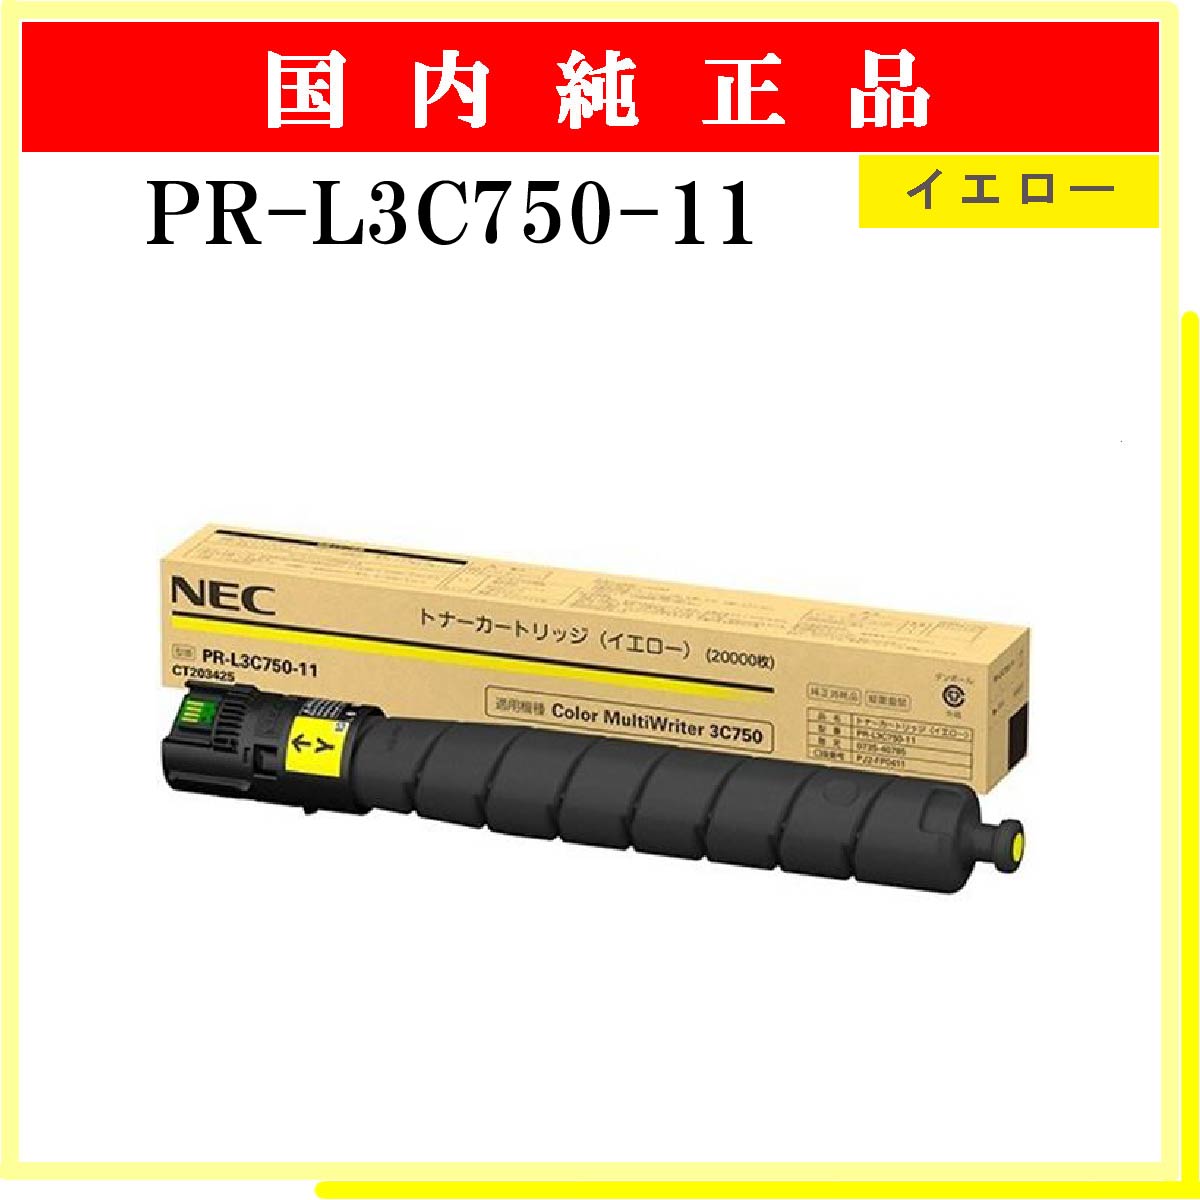 NEC トナーカートリッジ マゼンタ PR-L3C730-12 1個